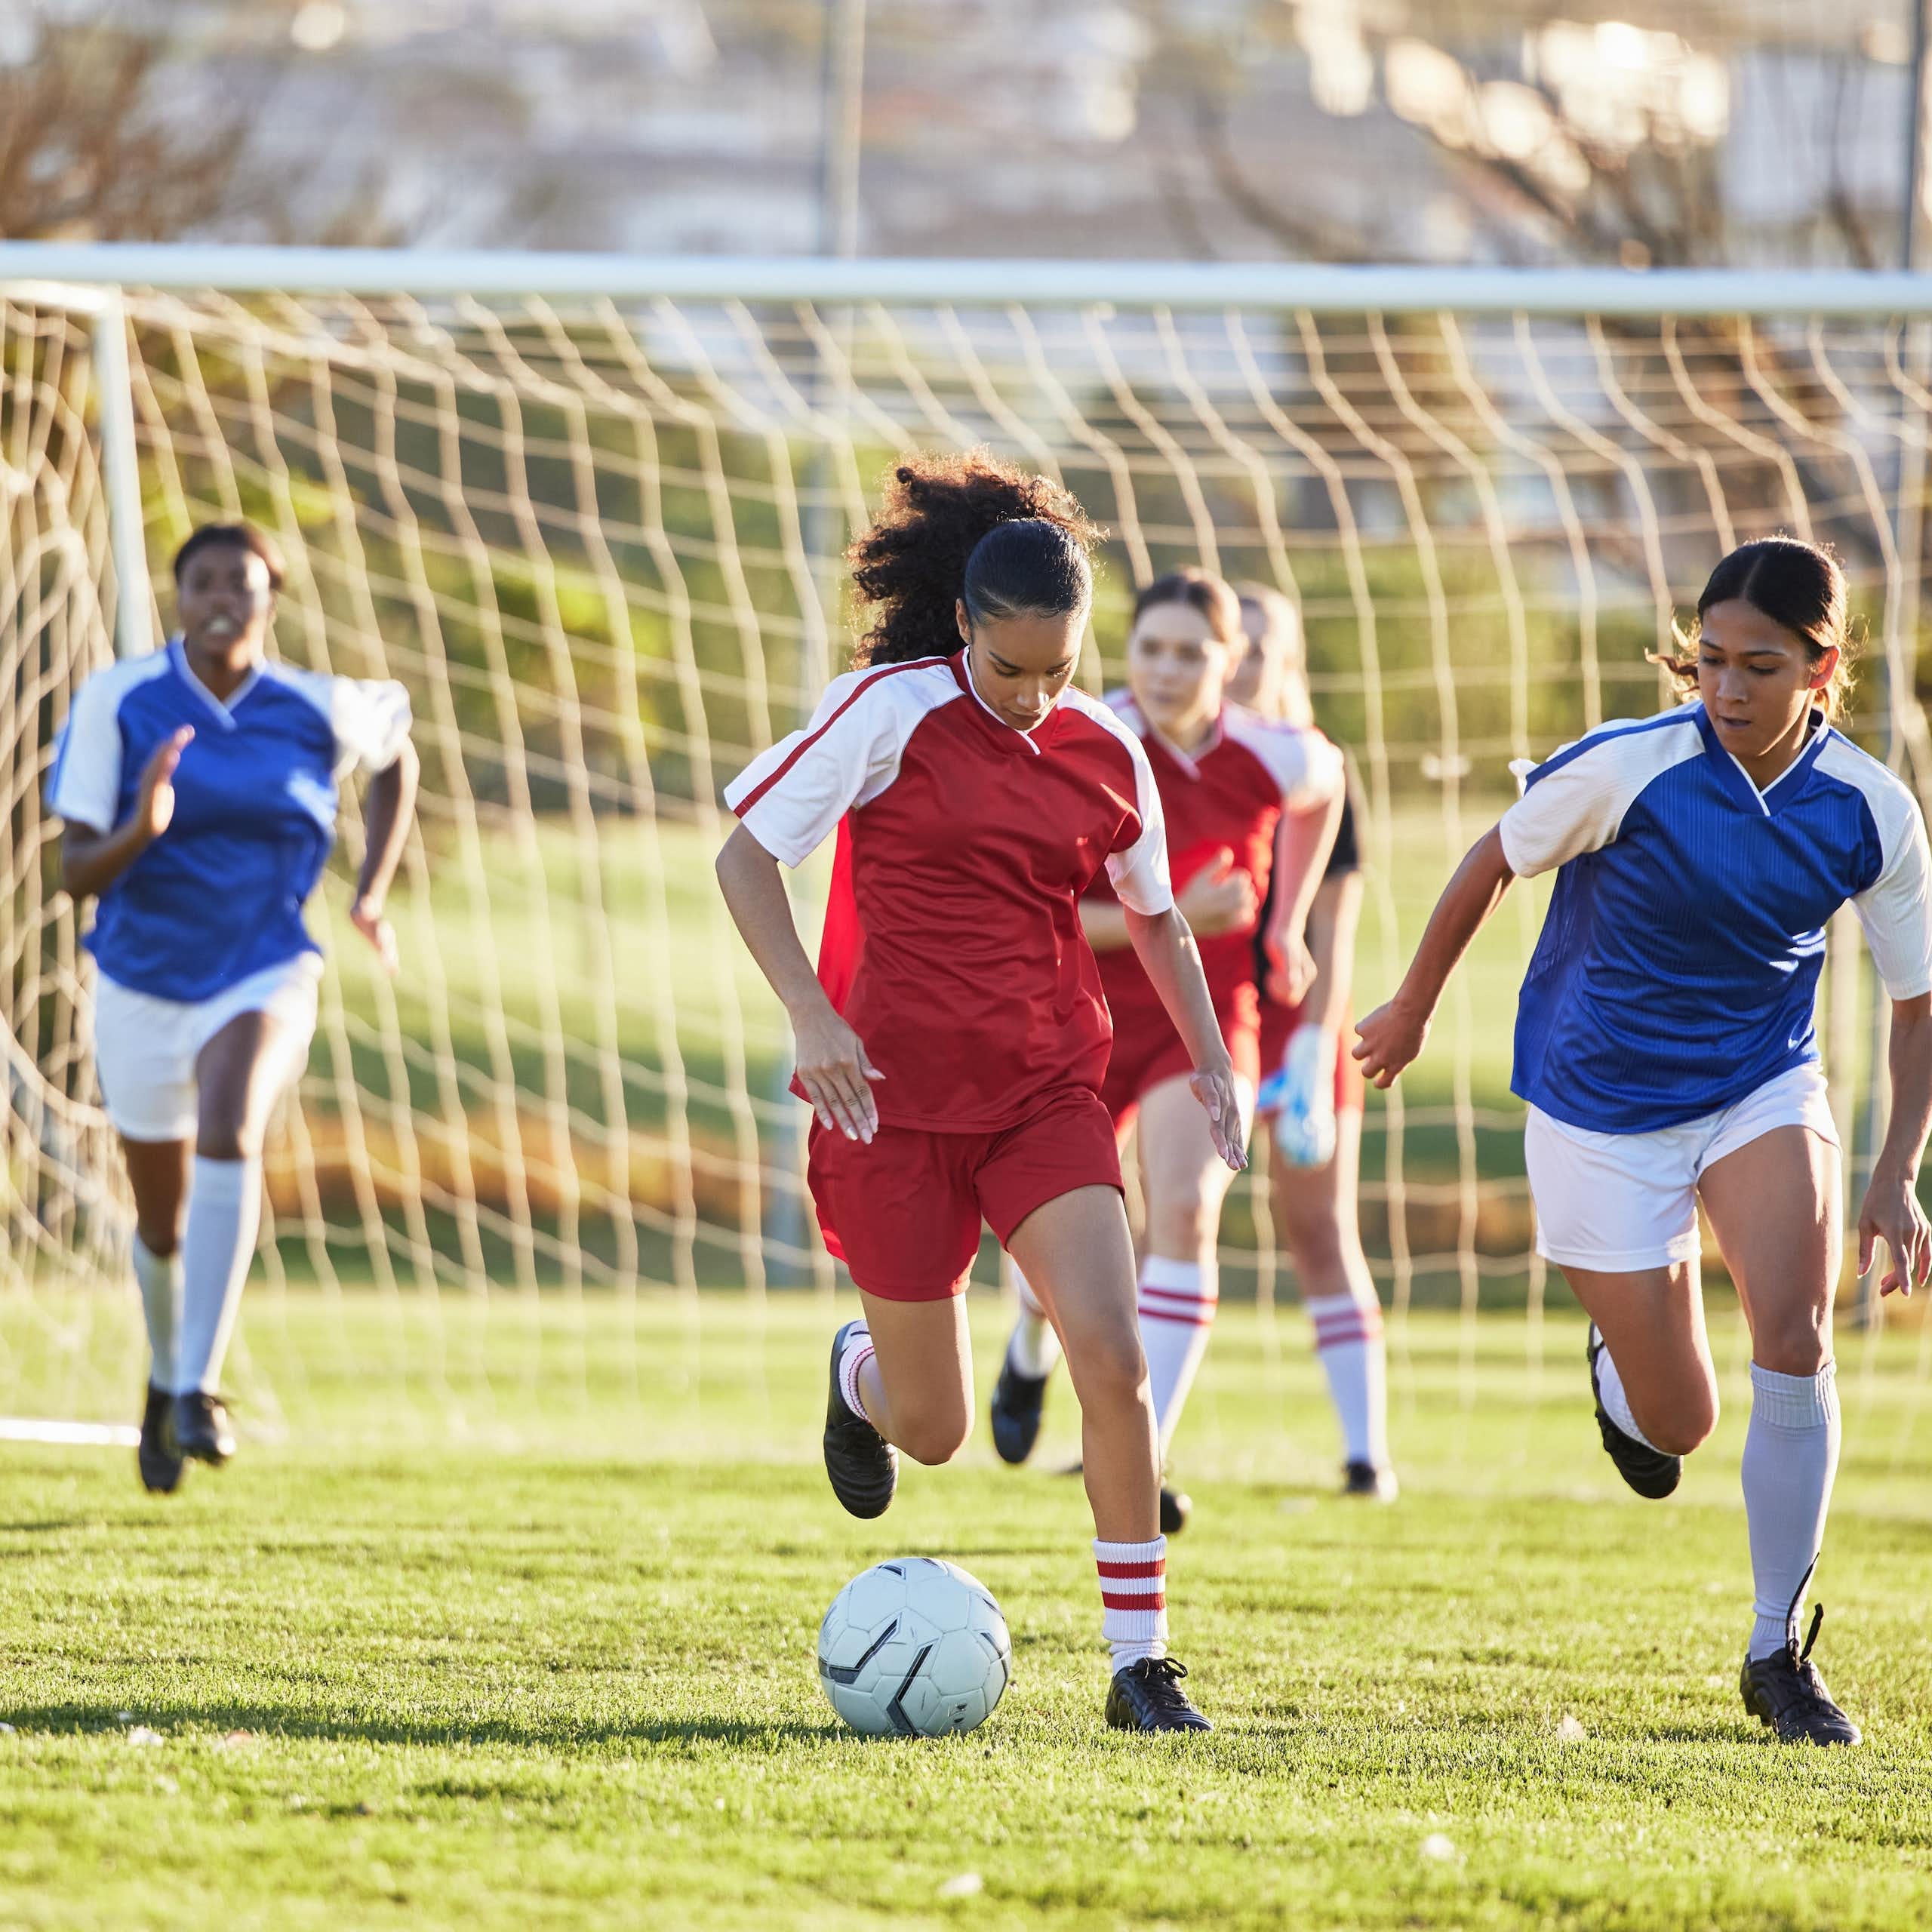 Lesiones en chicas futbolistas: cuáles son las más comunes y cómo pueden prevenirse